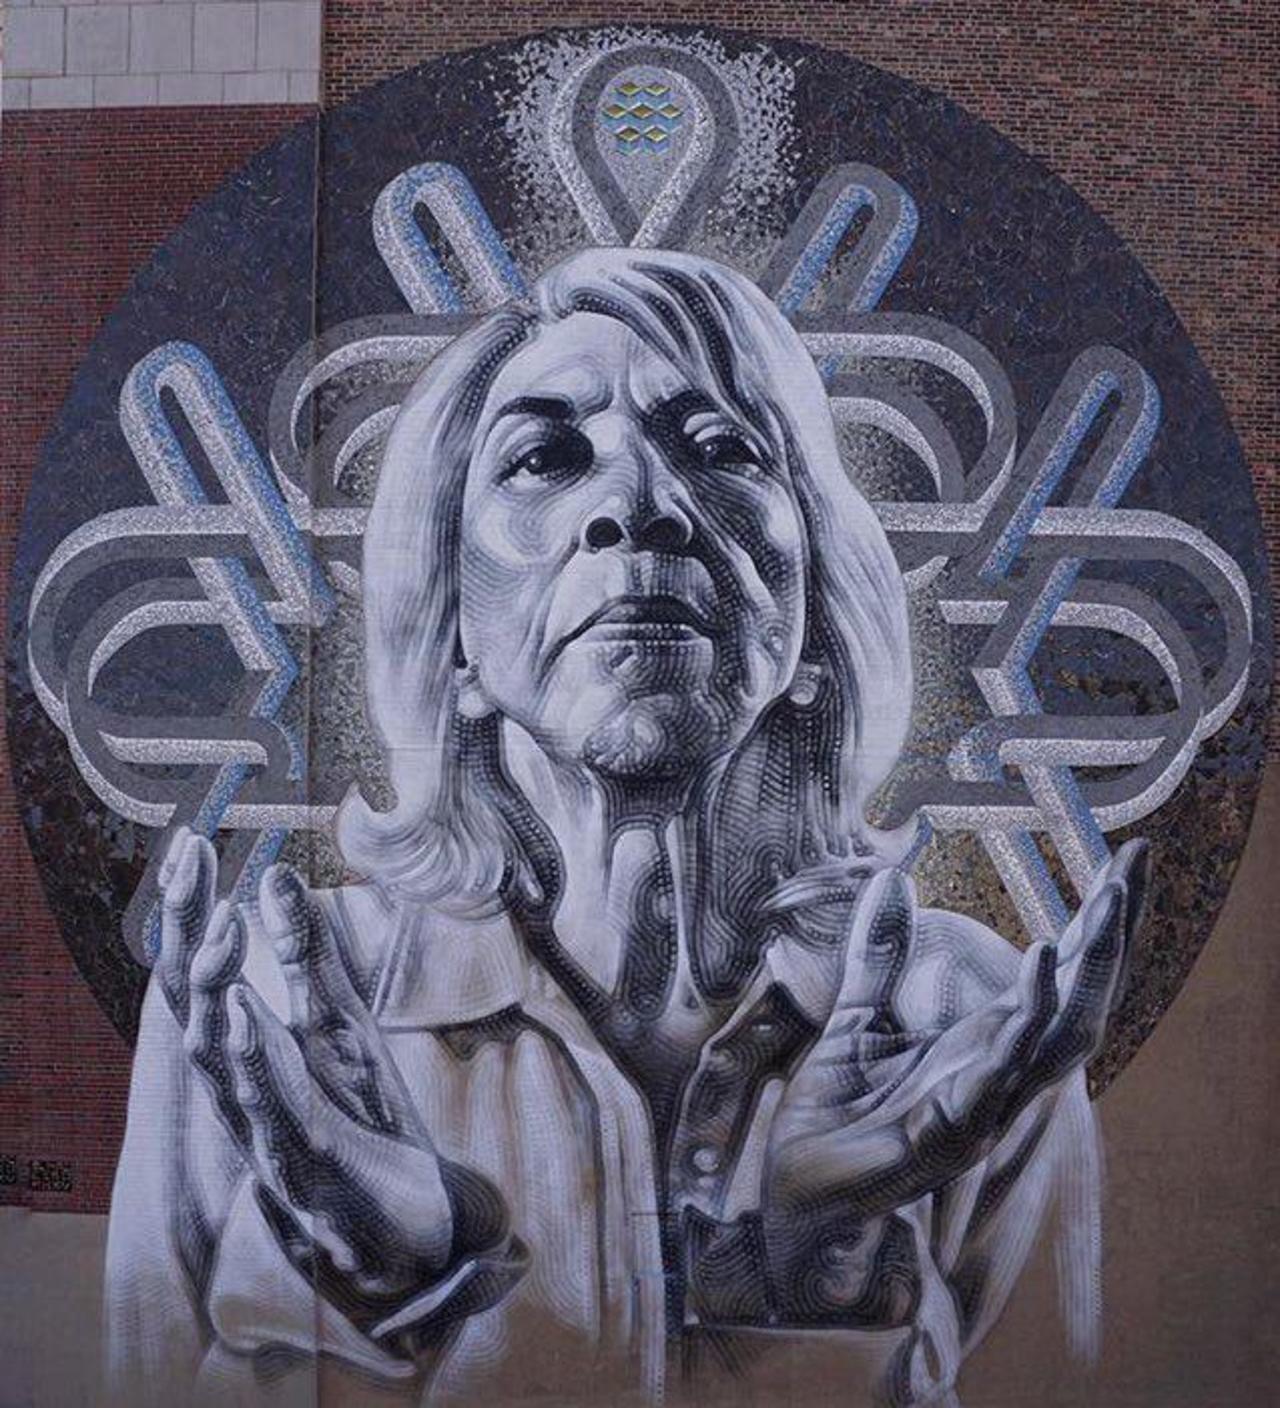 New Street Art by El Mac 

#art #graffiti #mural #streetart https://t.co/iRXqkIzMGG